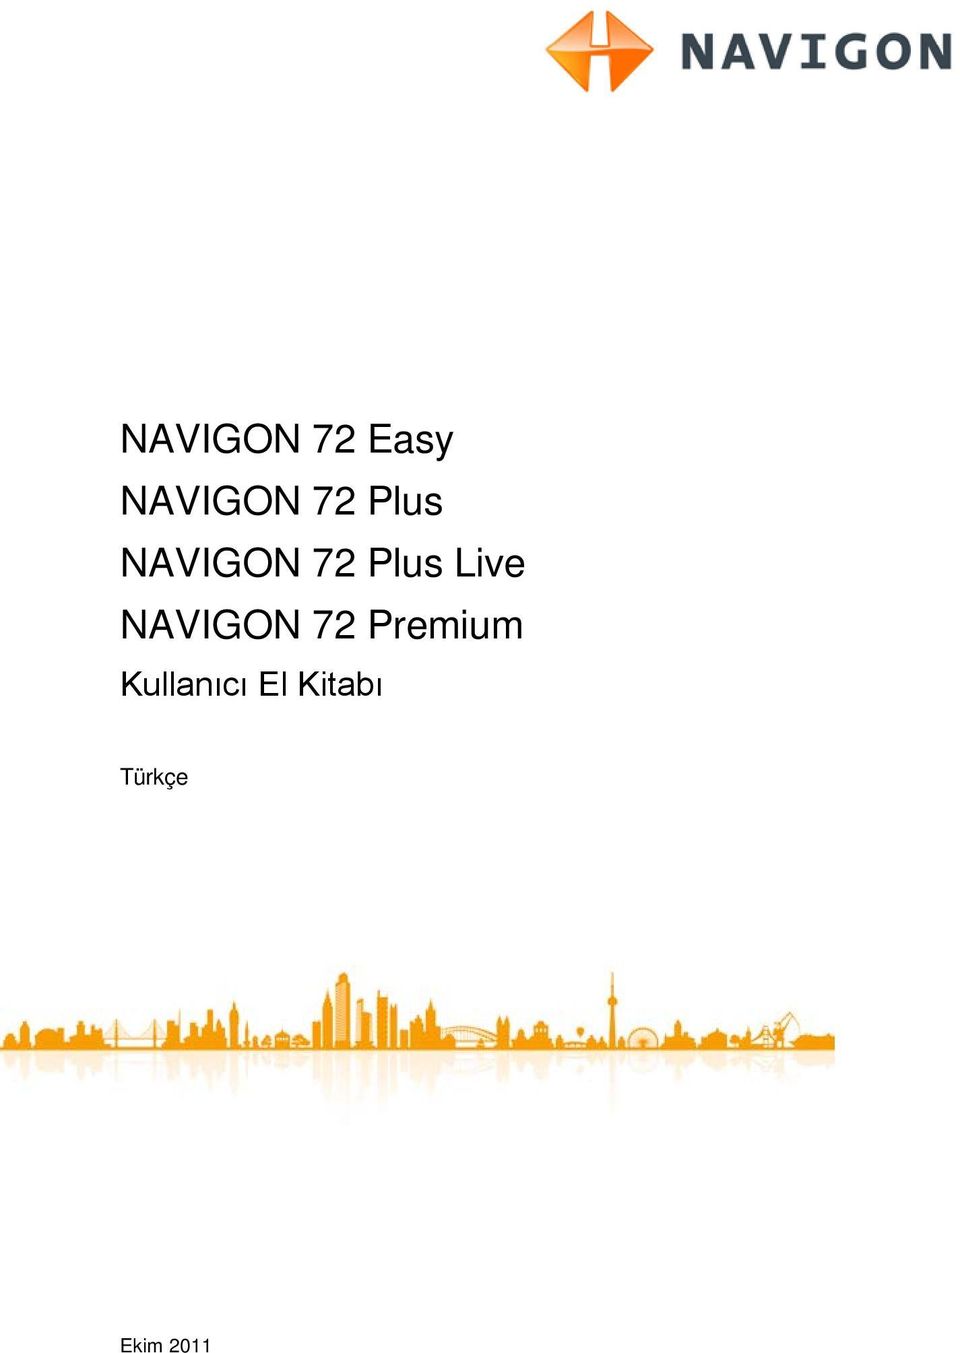 NAVIGON 72 Premium